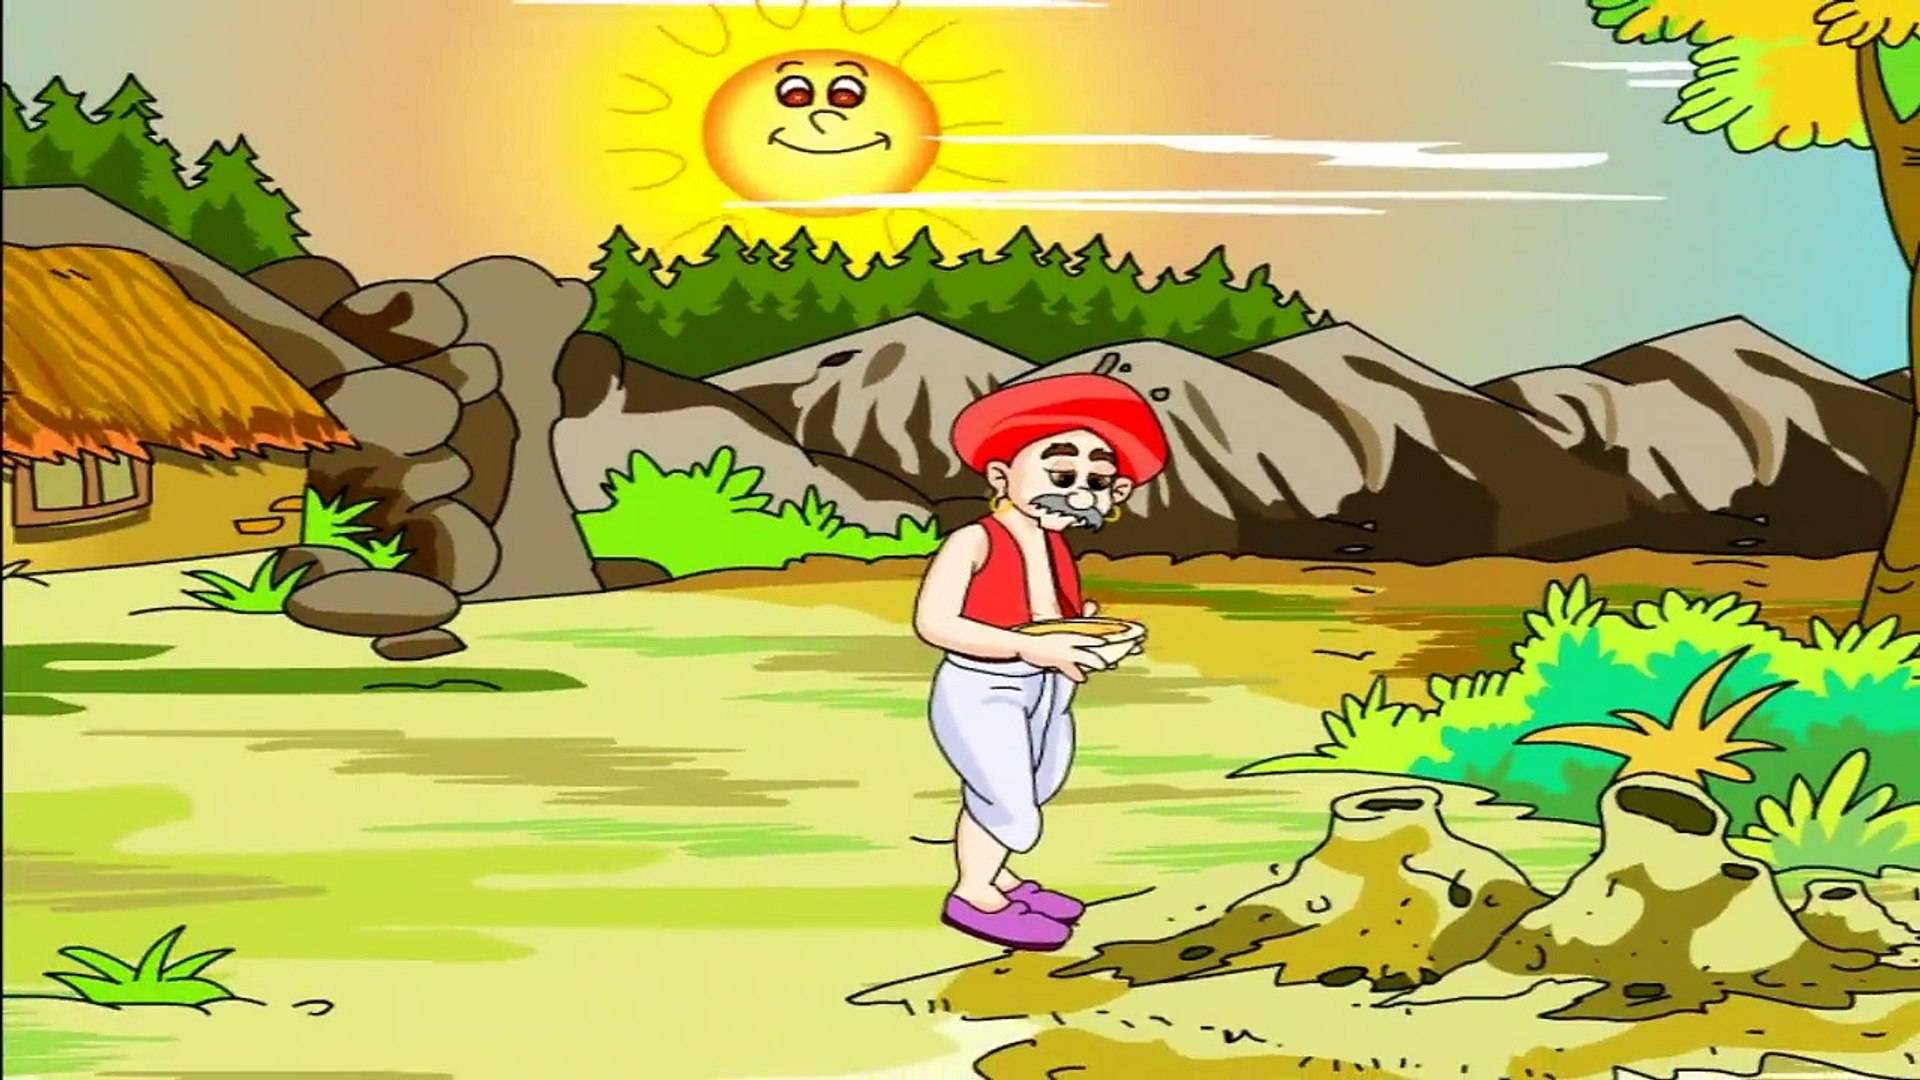 Kisaan Aur Saamp - Hindi Animated Short Story - video Dailymotion